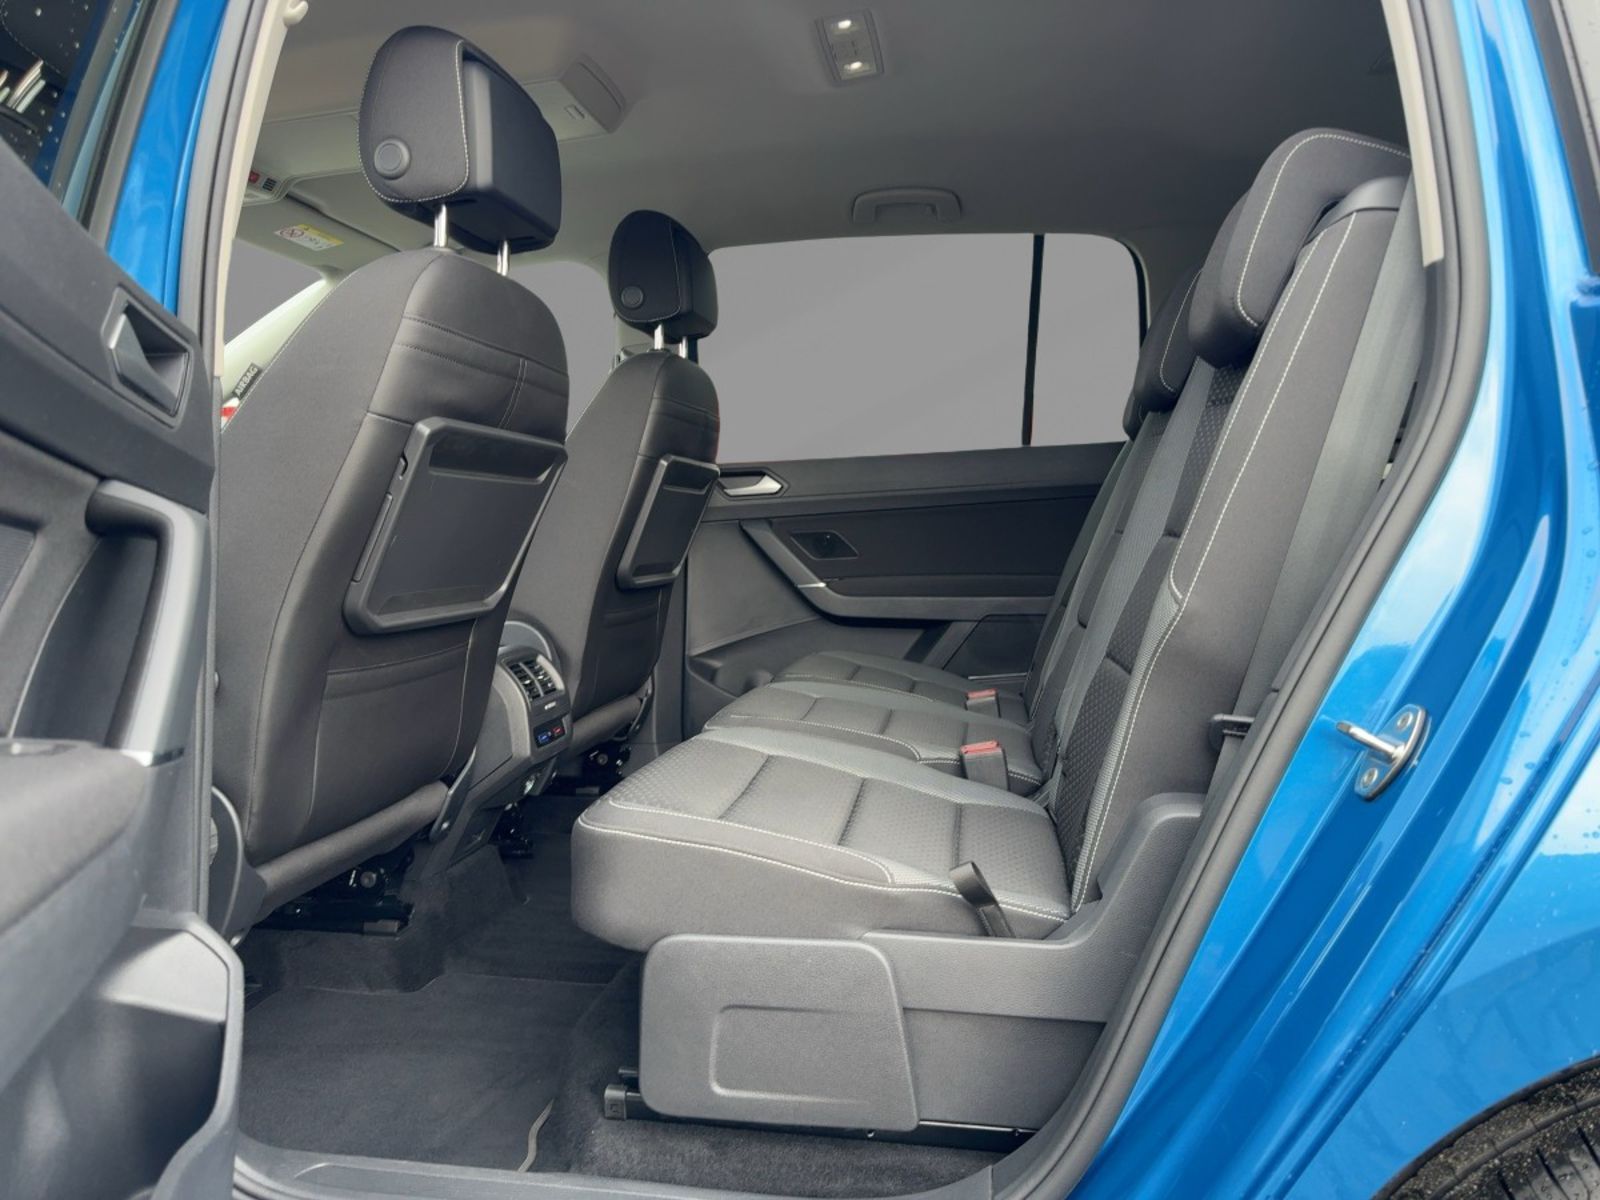 Fahrzeugabbildung Volkswagen Touran 2.0 TDI Active Alu AHK 7-Sitzer Navi Sitz